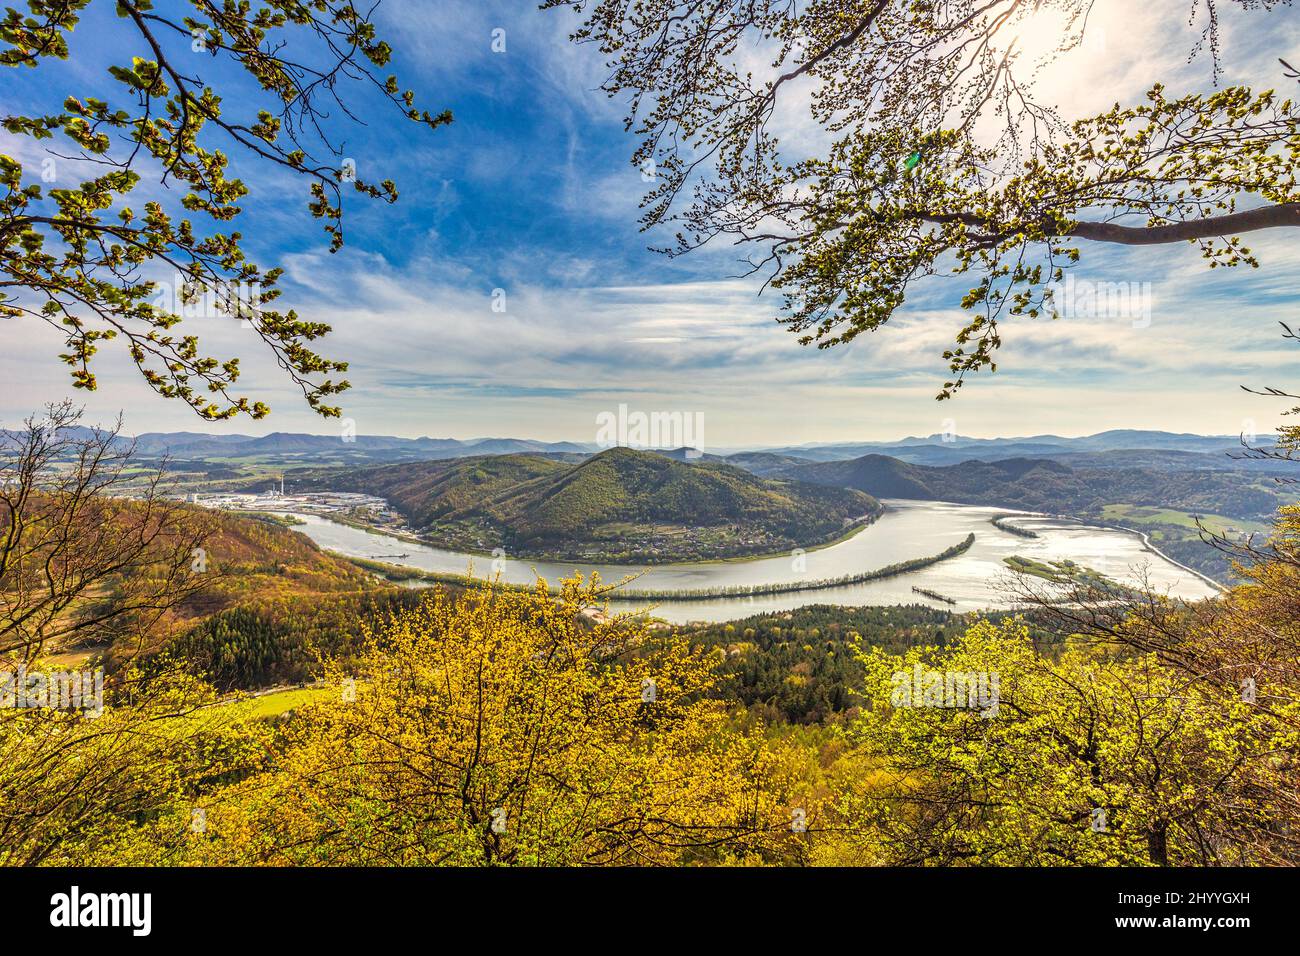 Vista della diga di Nosice sul fiume Vah dalla collina di Klapy vicino alla città di Povazska Bystrica nella Slovacchia nord-occidentale, Europa. Foto Stock